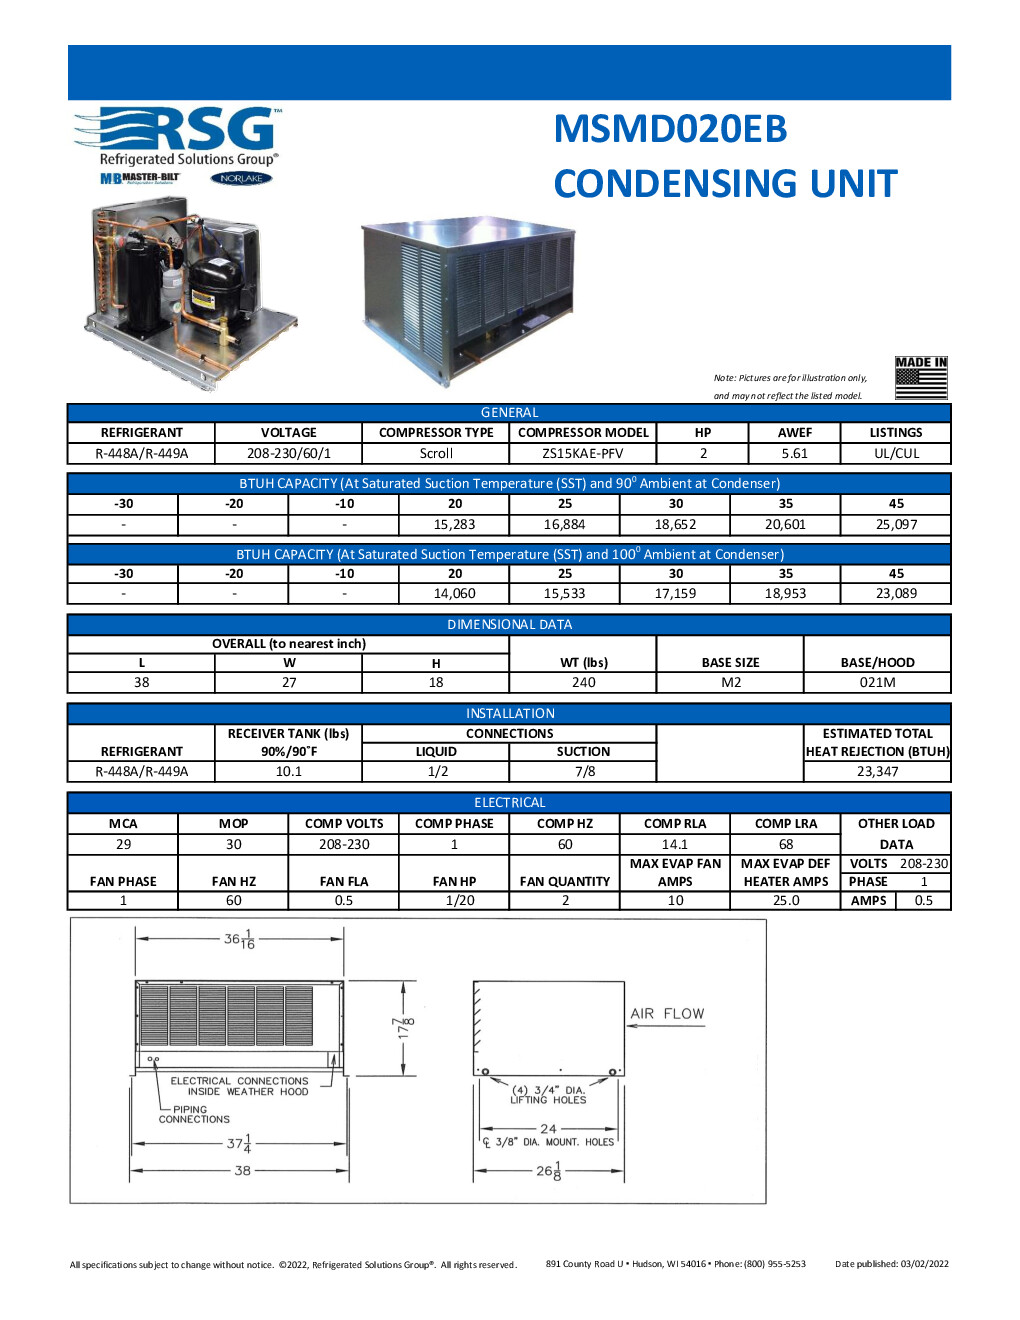 Master-Bilt MSMD020EB Remote Medium Temp Scroll Condensing Unit, 2 HP, 208-230v/60/1-ph